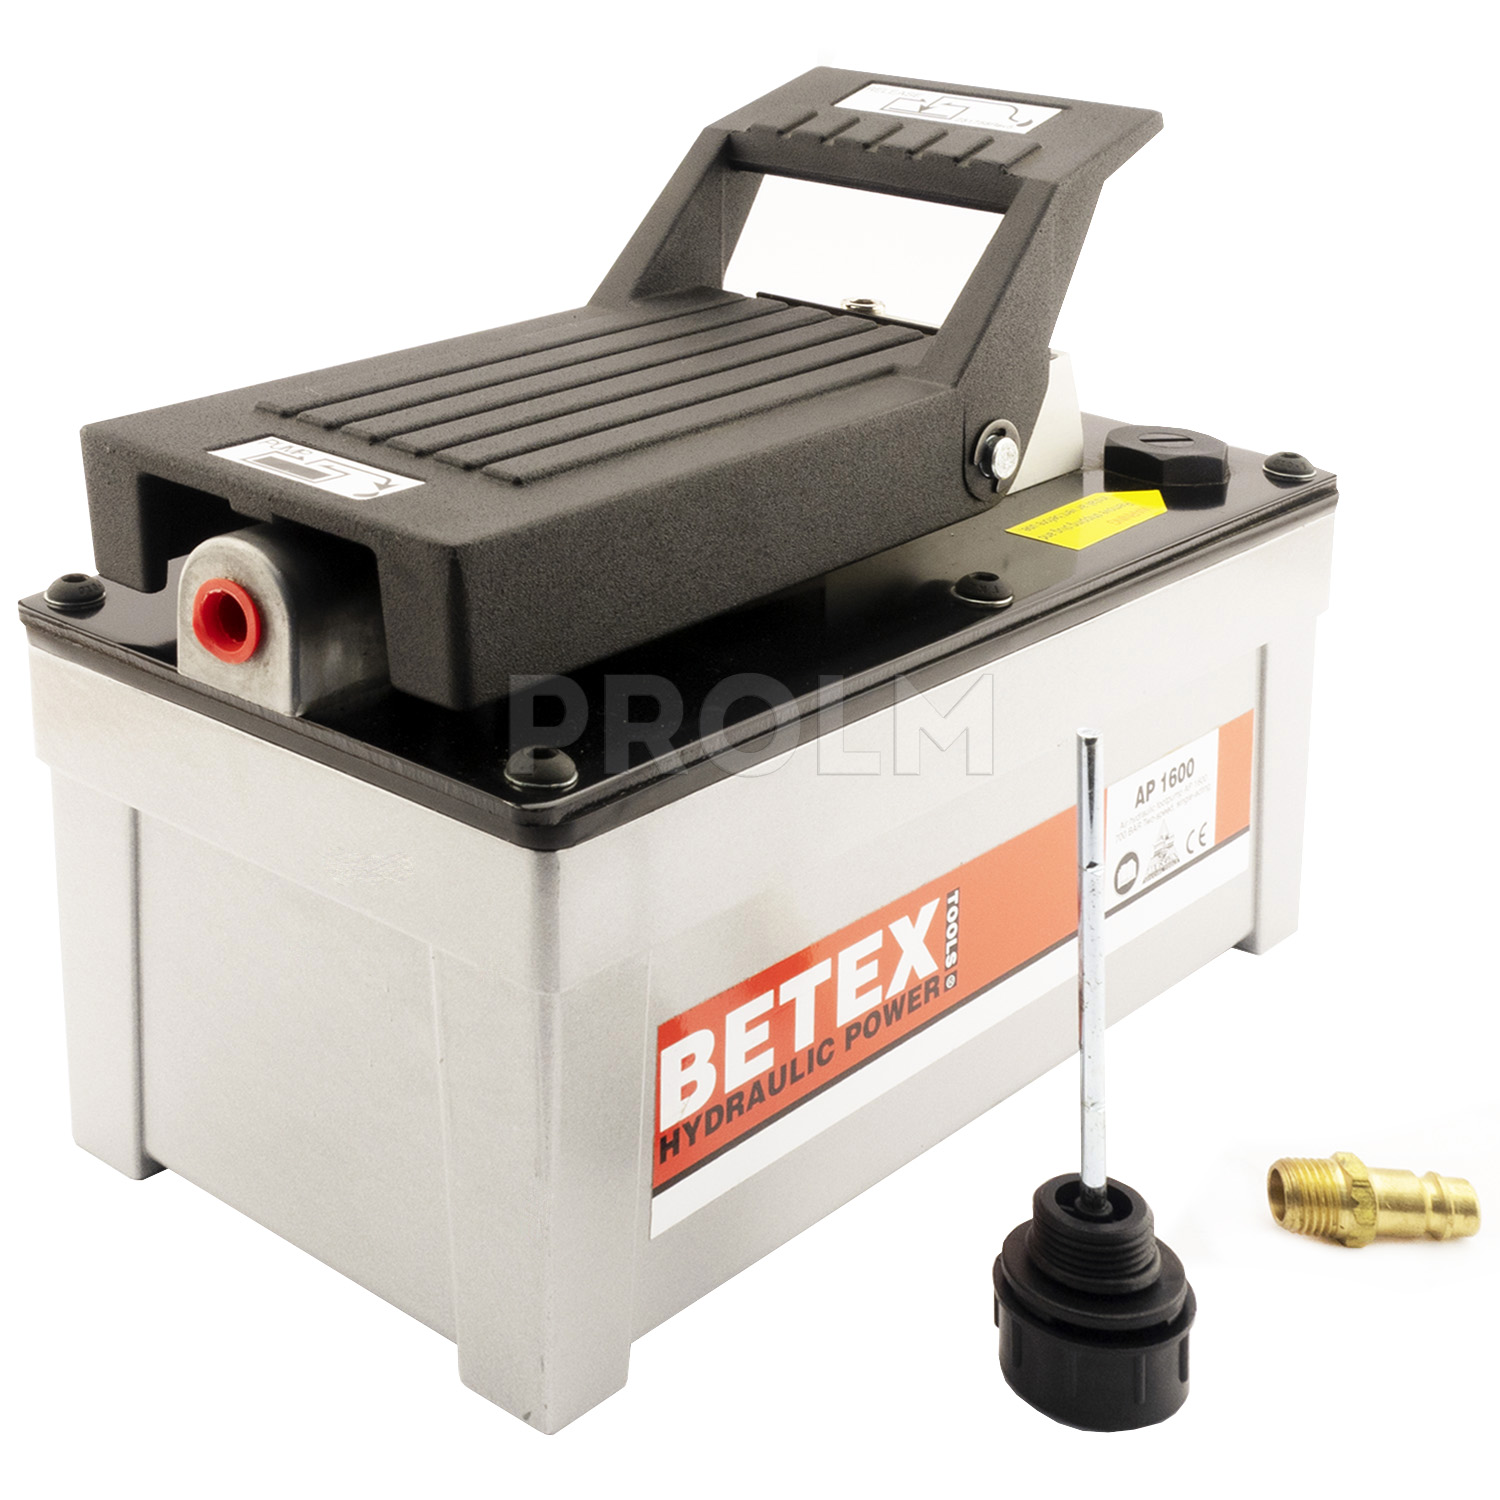 Ножной гидравлический насос  BETEX AP 1600S air hydraulic